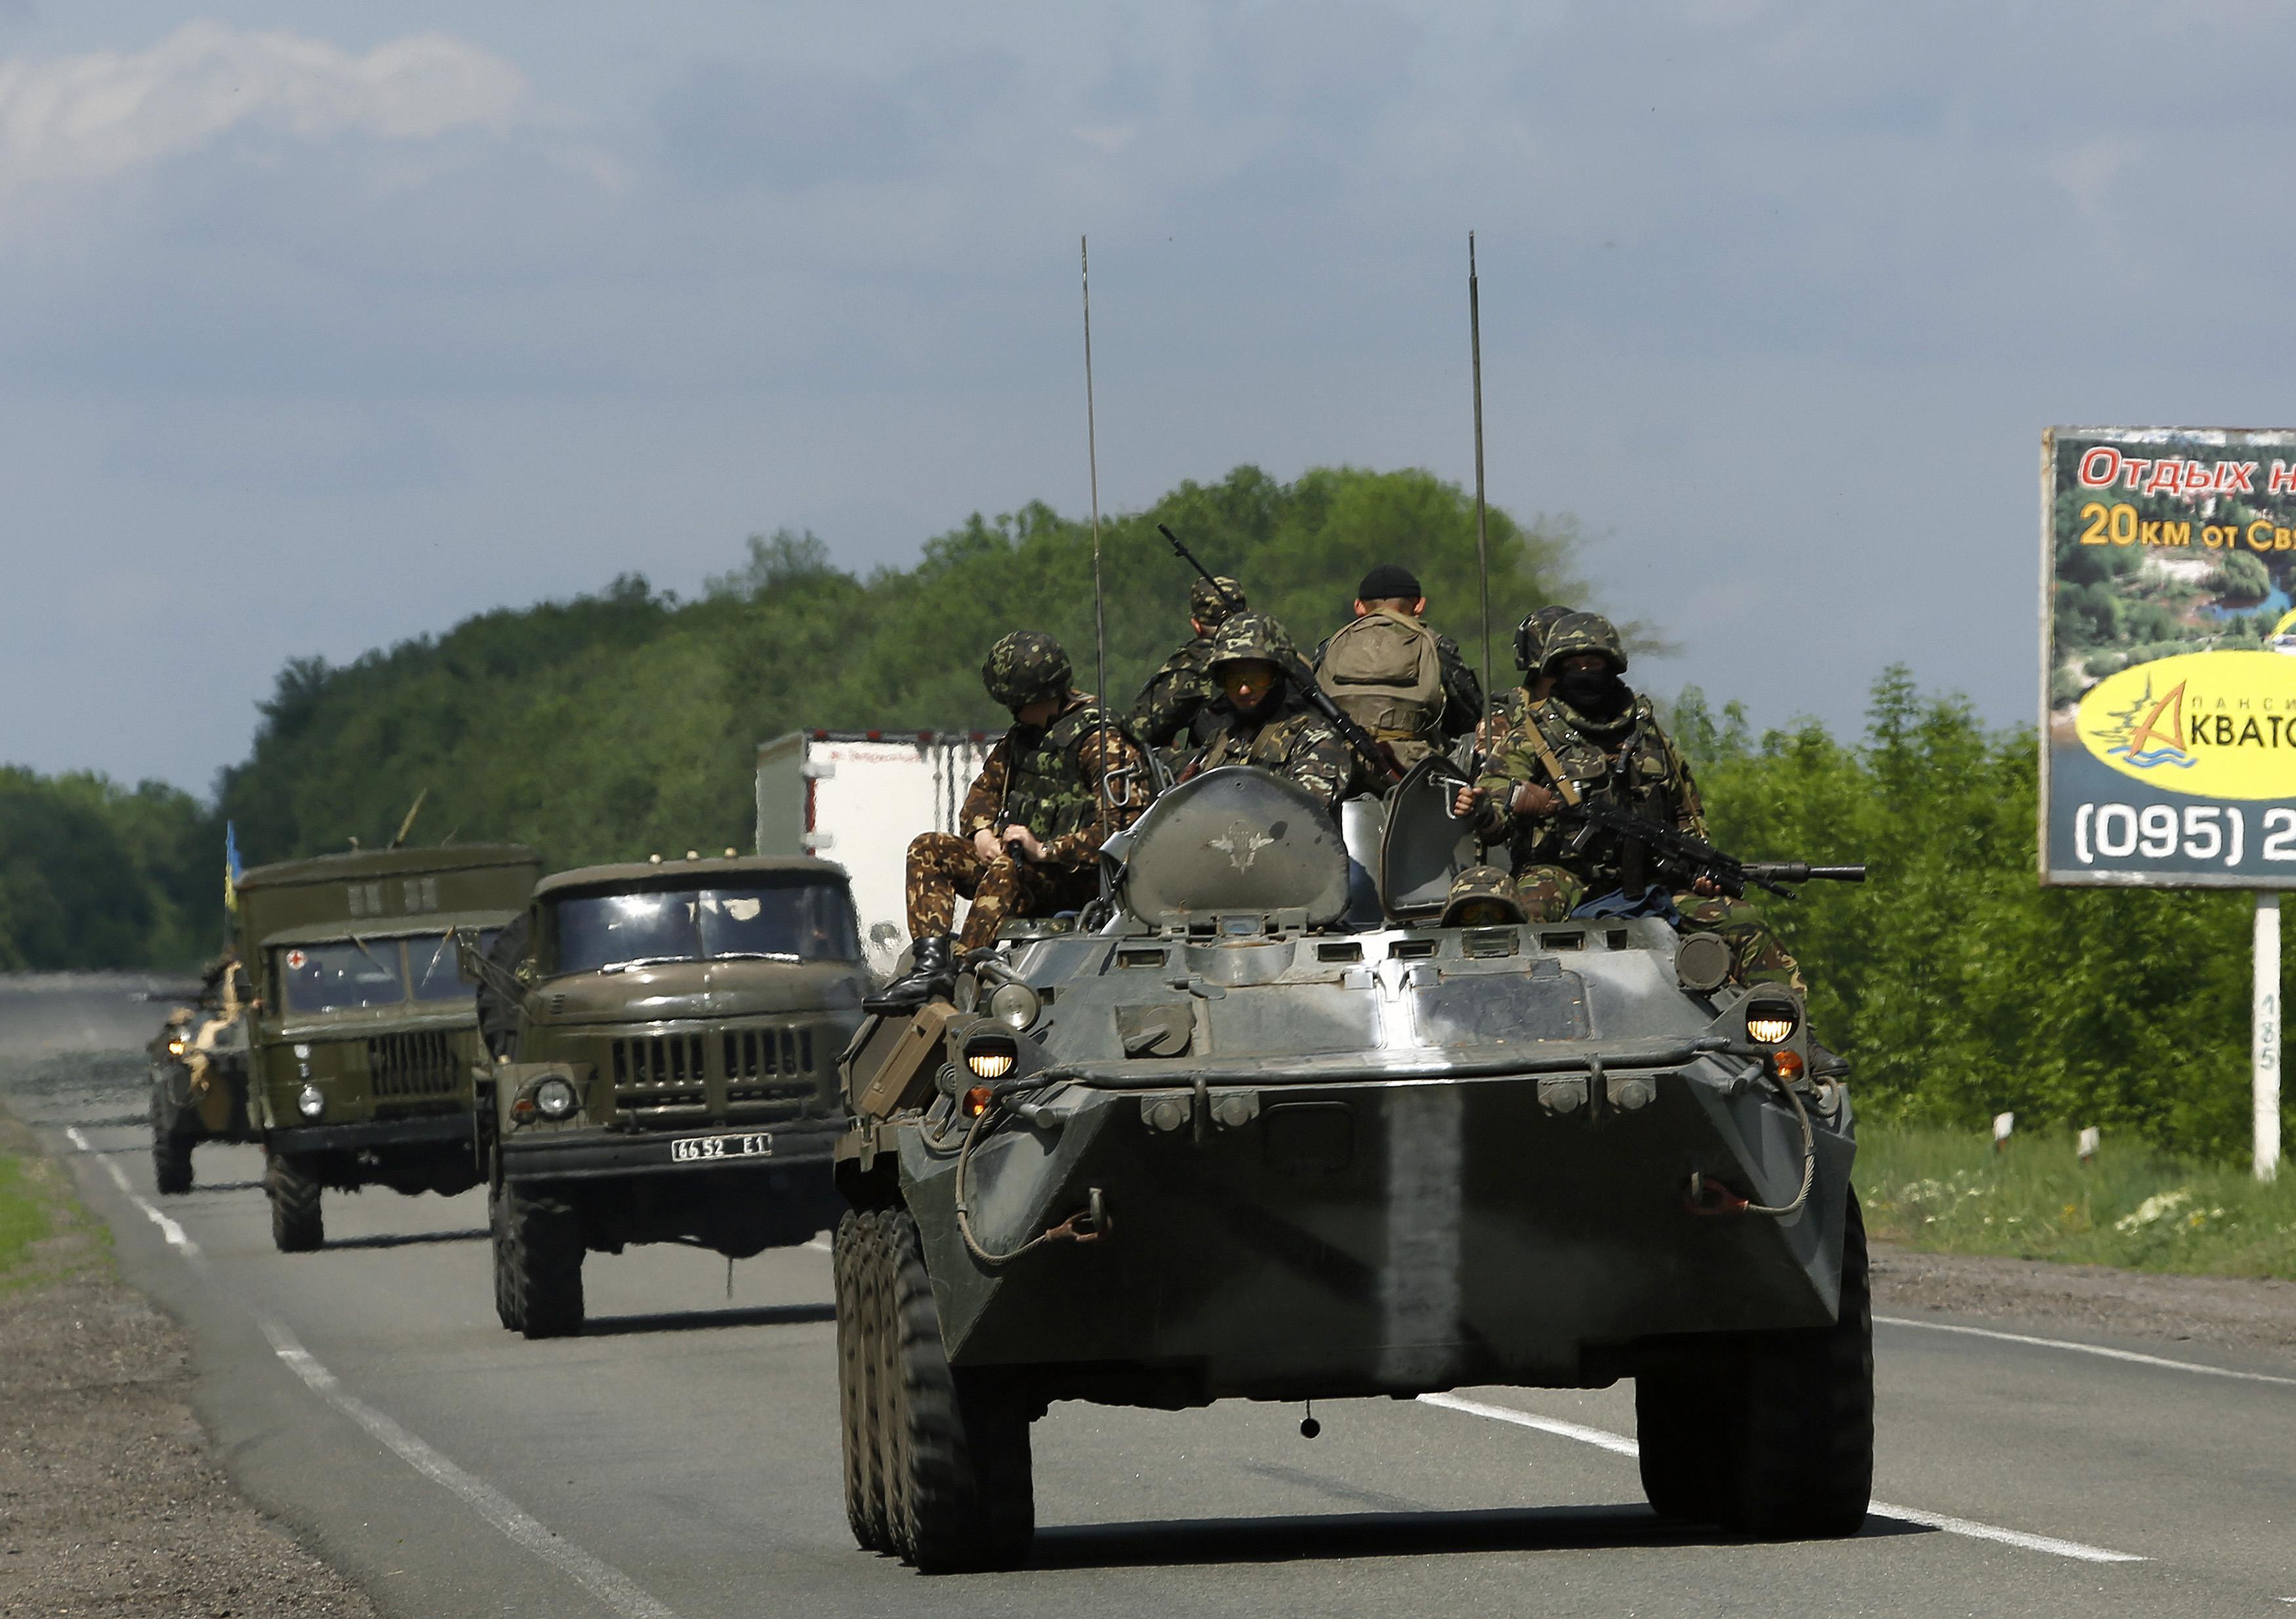 568 μέλη του ουκρανικού στρατού έχουν σκοτωθεί στις μάχες με τους φιλορώσους από τον Μάιο